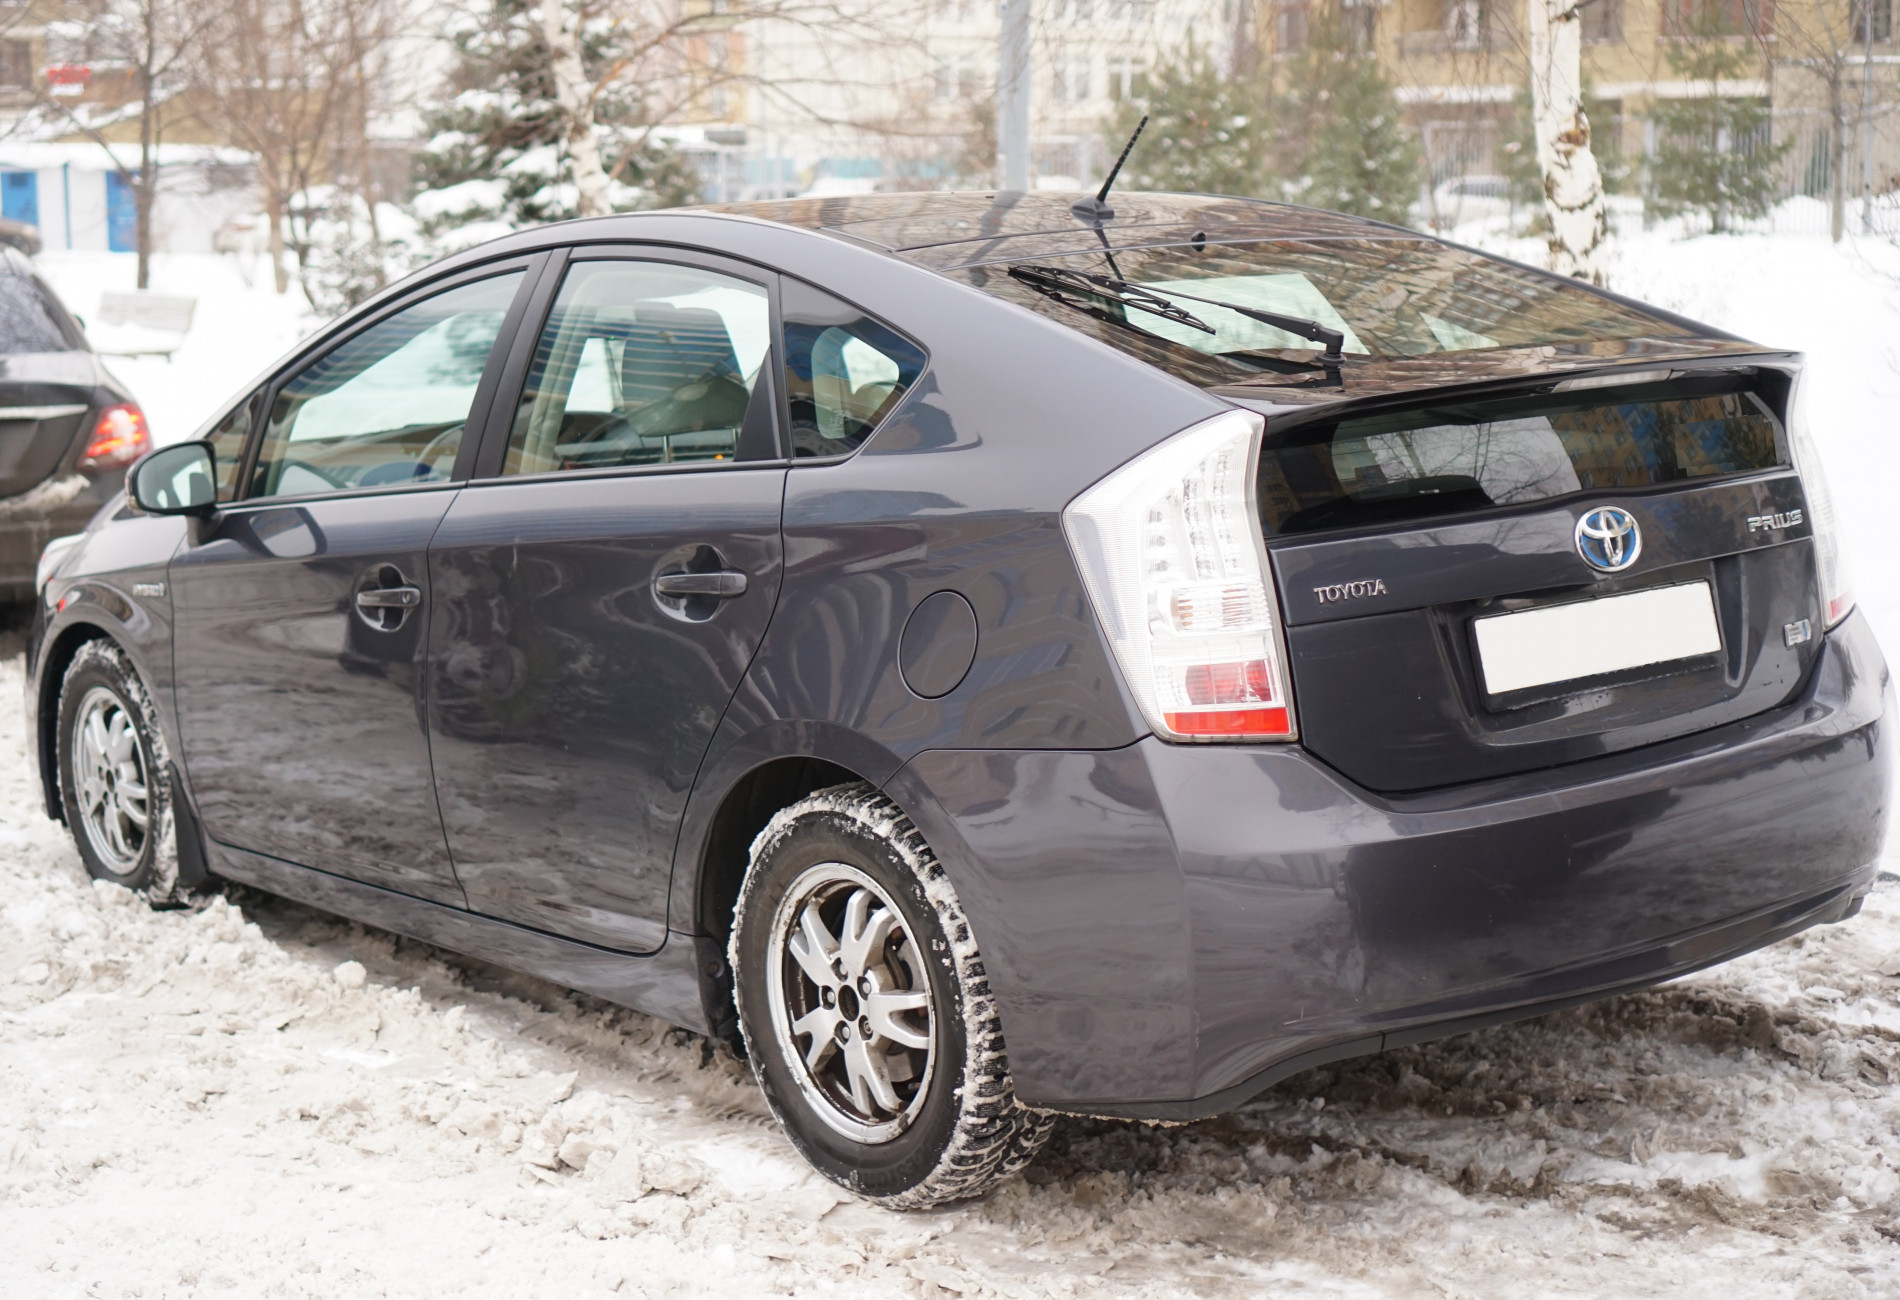 Аренда toyota prius эконом класса 2010 года в городе Москва Строгино от 2400 руб./сутки, передний привод, двигатель: гибрид, объем 1.8 литров, ОСАГО (Мультидрайв), без водителя, недорого, вид 4 - RentRide